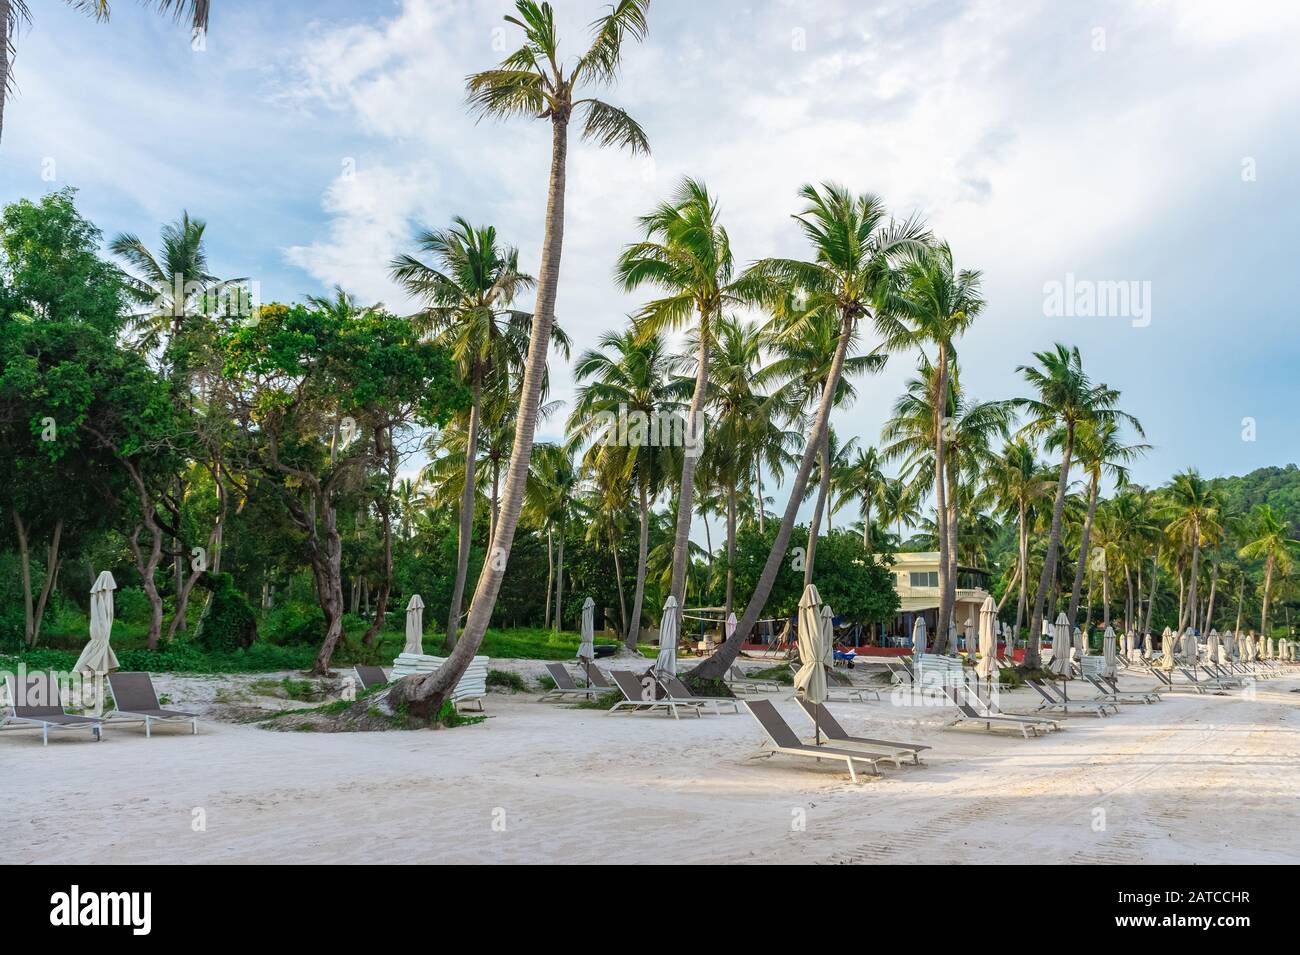 spiaggia solitaria con sedie a sdraio vuote circondate da palme da cocco. Bai sao Beach, Phu Quoc, Vietnam Foto Stock